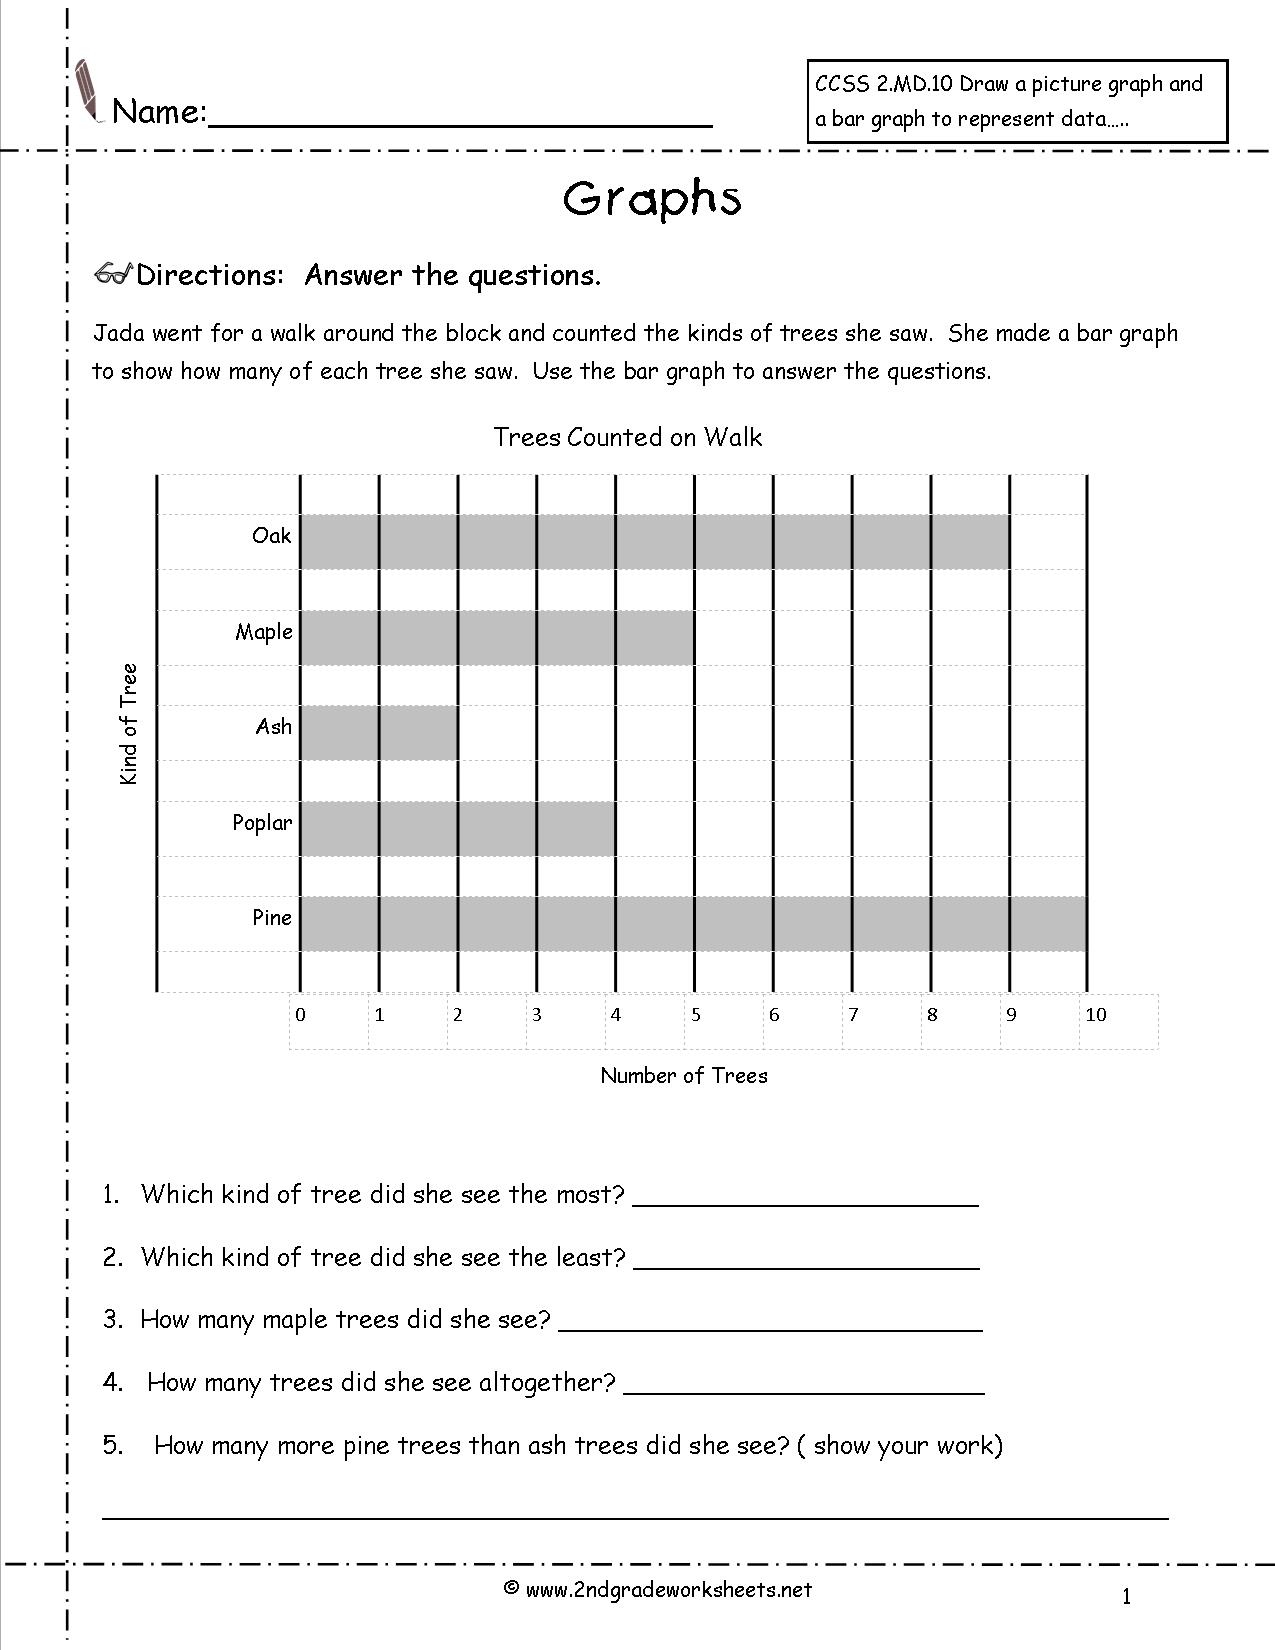 Creating Bar Graphs Worksheets